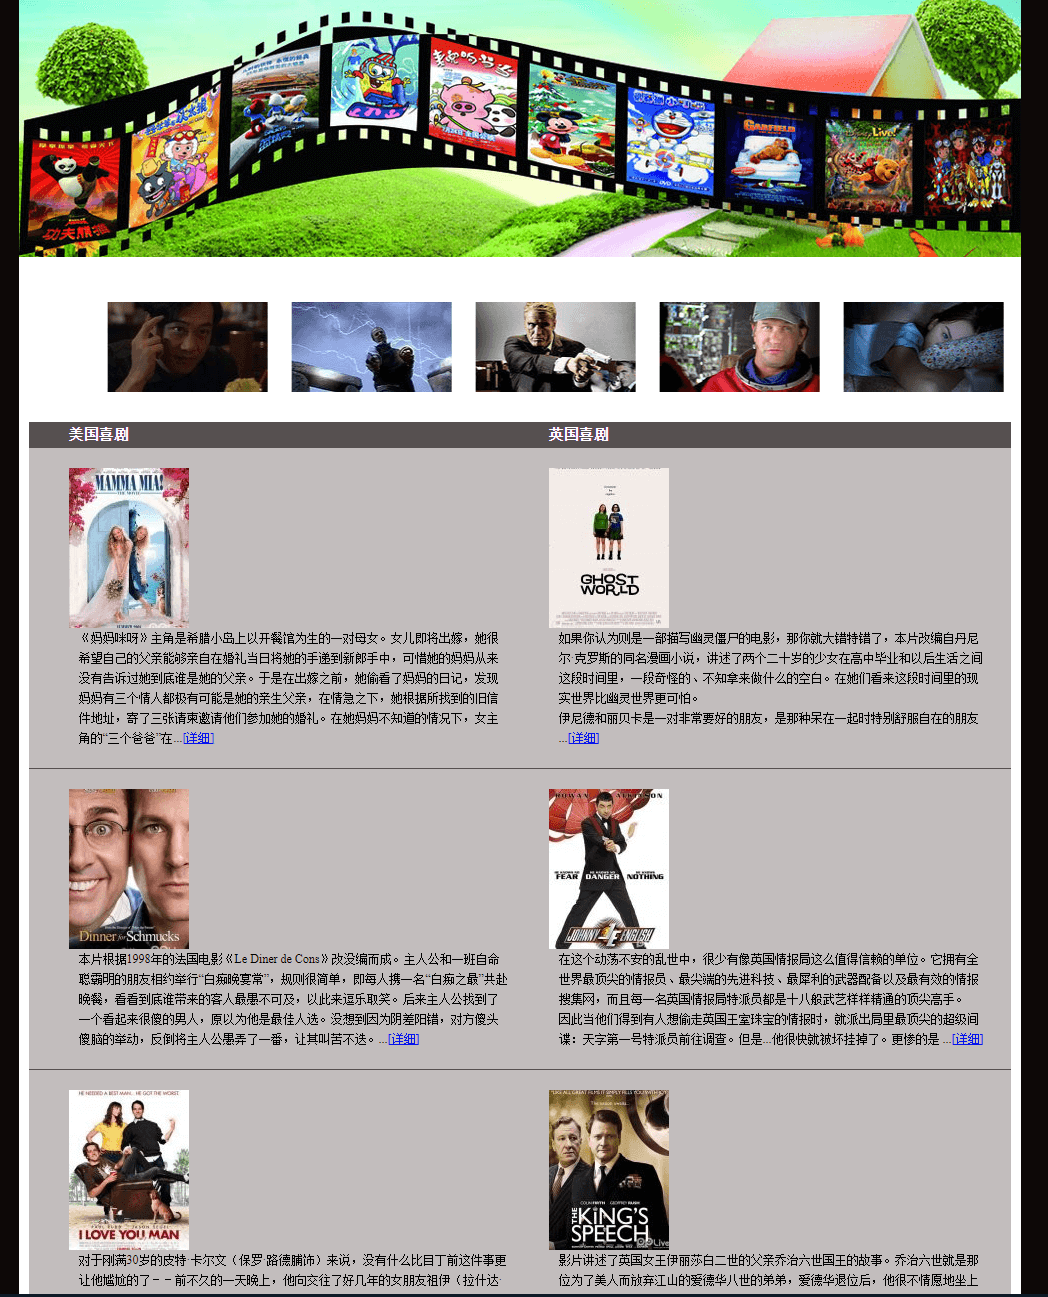 学生html个人网页作业作品下载 个人电影影视网页设计制作 大学生个人